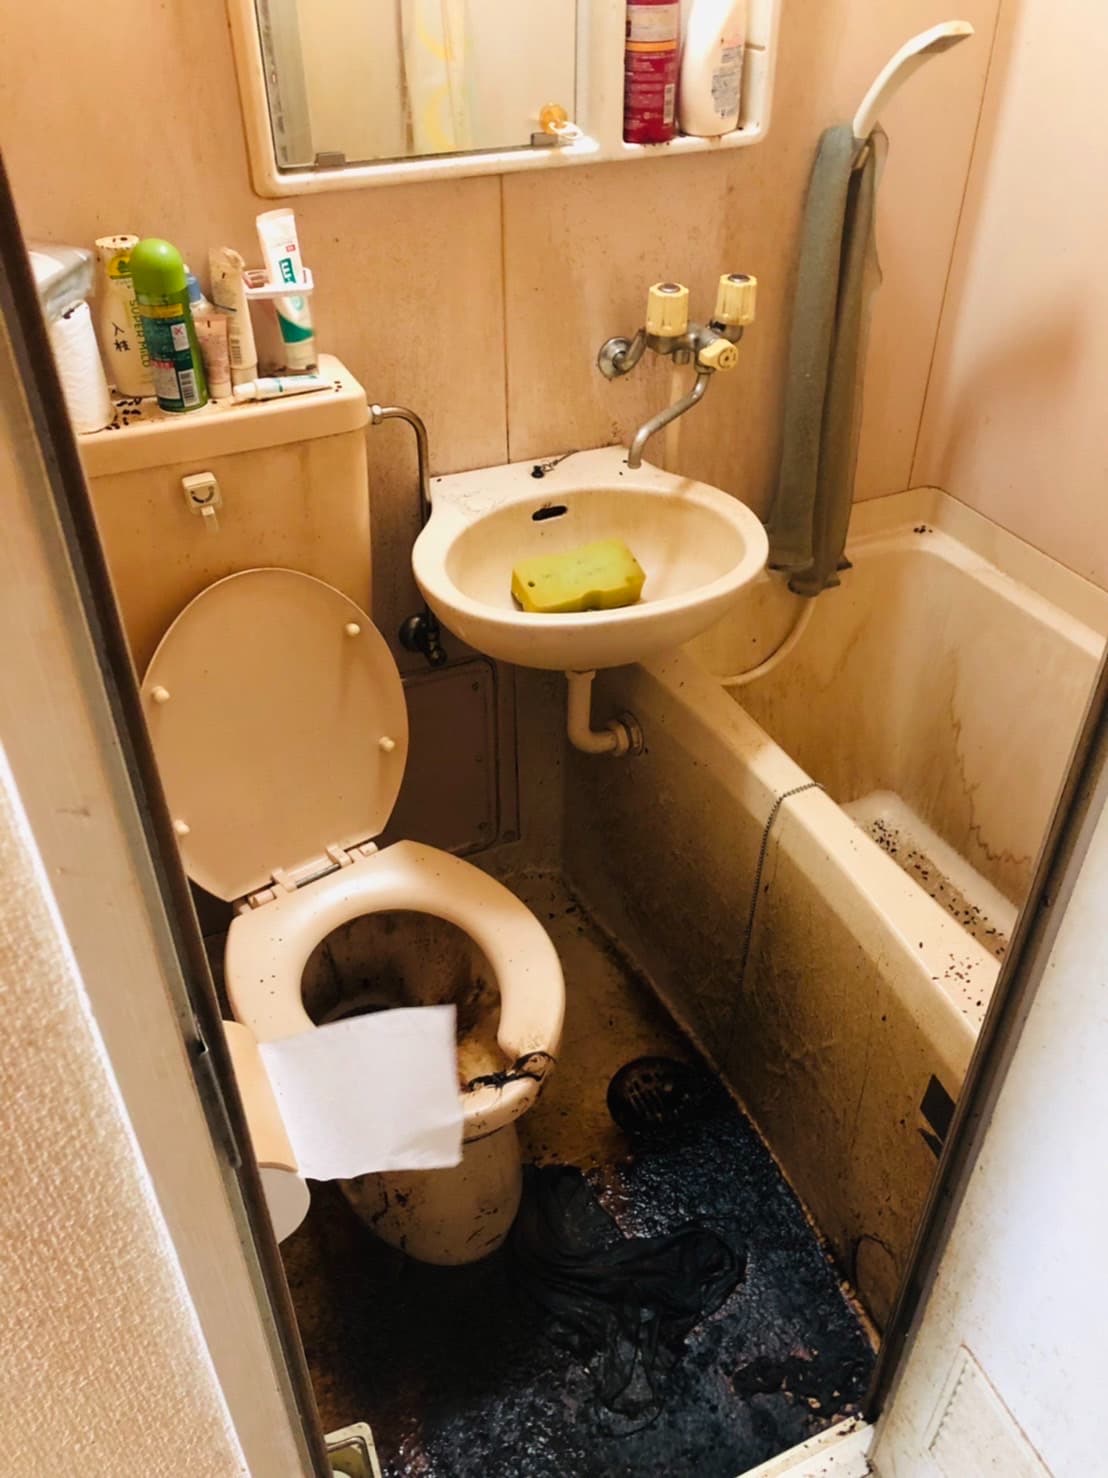 ユニットバスのトイレで亡くなった方の特殊清掃現場の写真